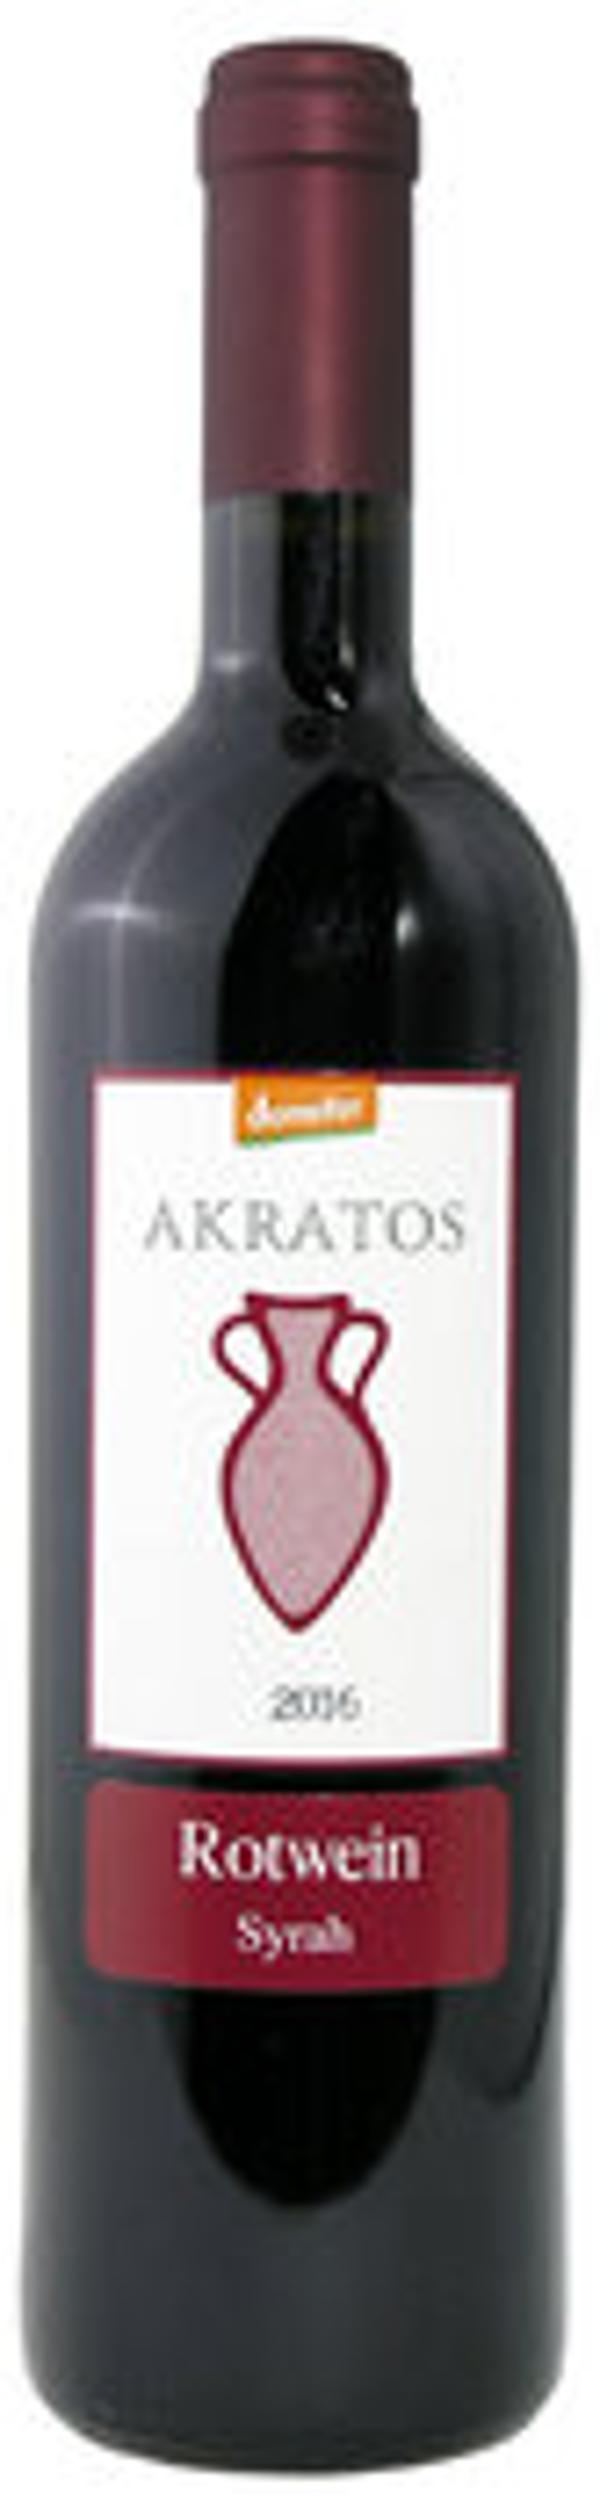 Produktfoto zu Akratos- Rotwein